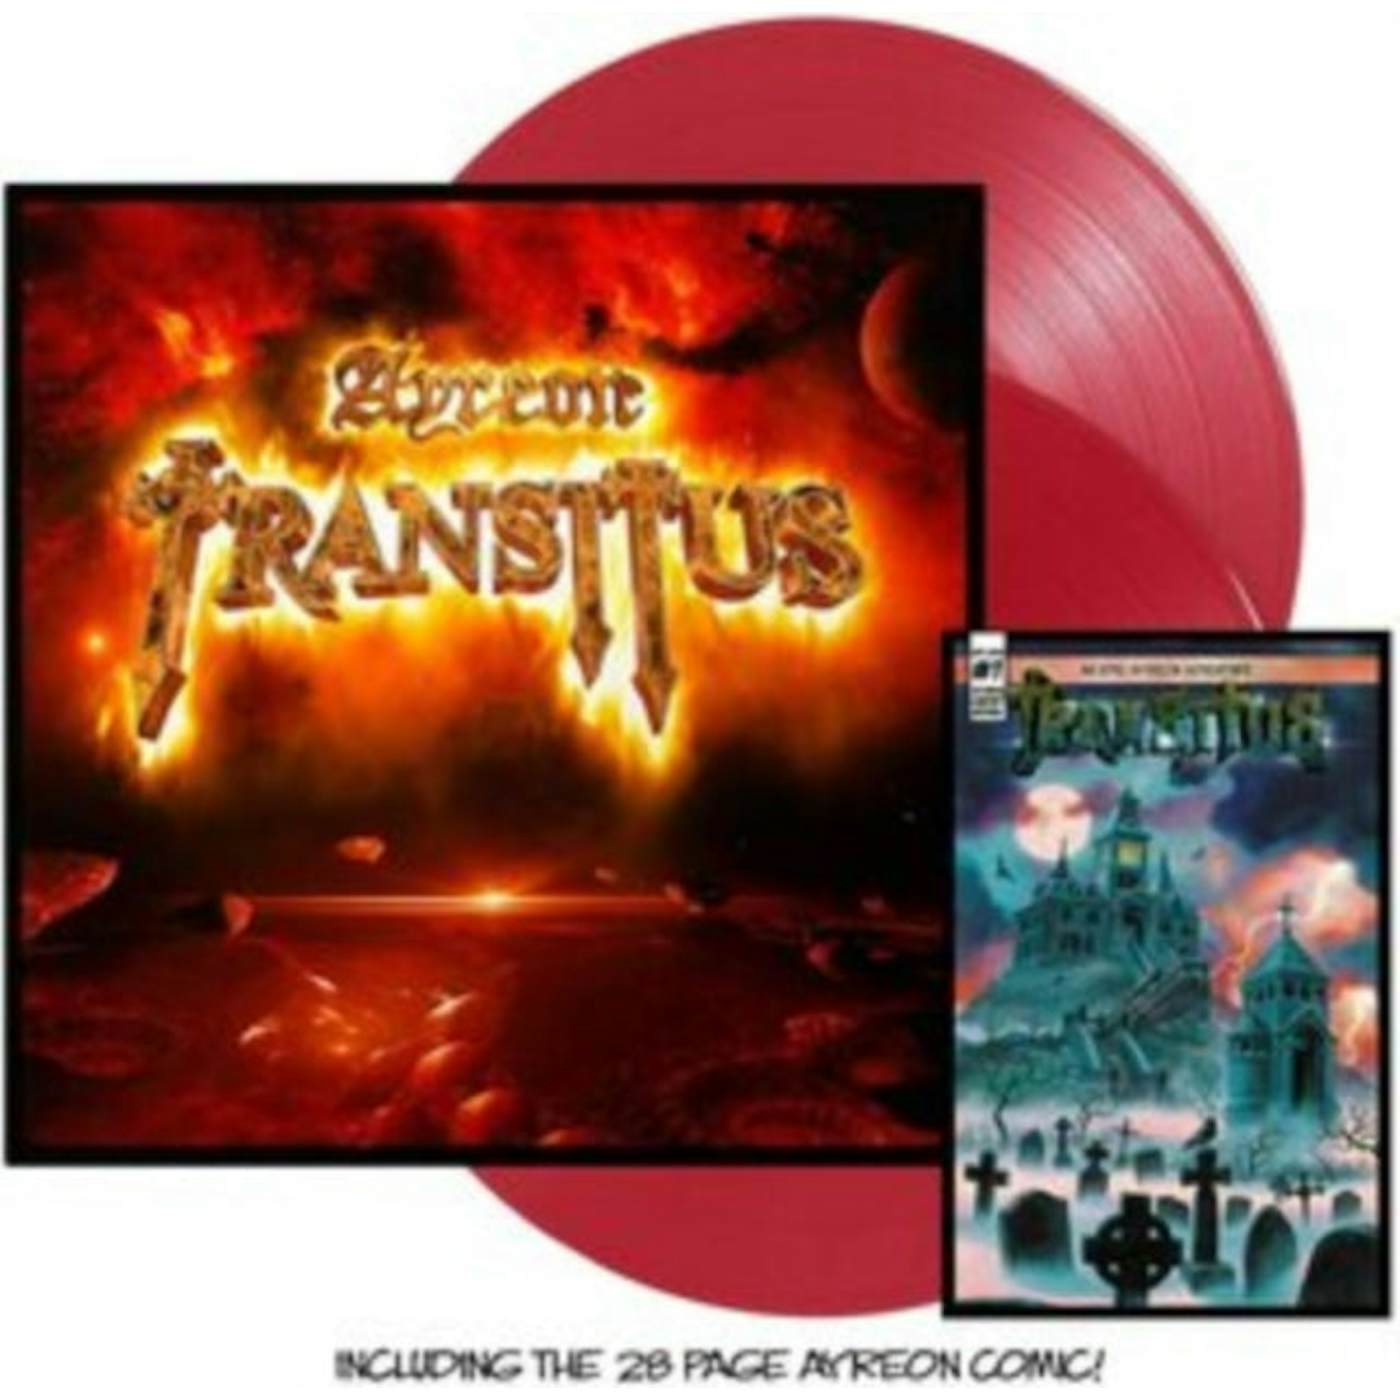 Ayreon LP - Transitus (Vinyl)